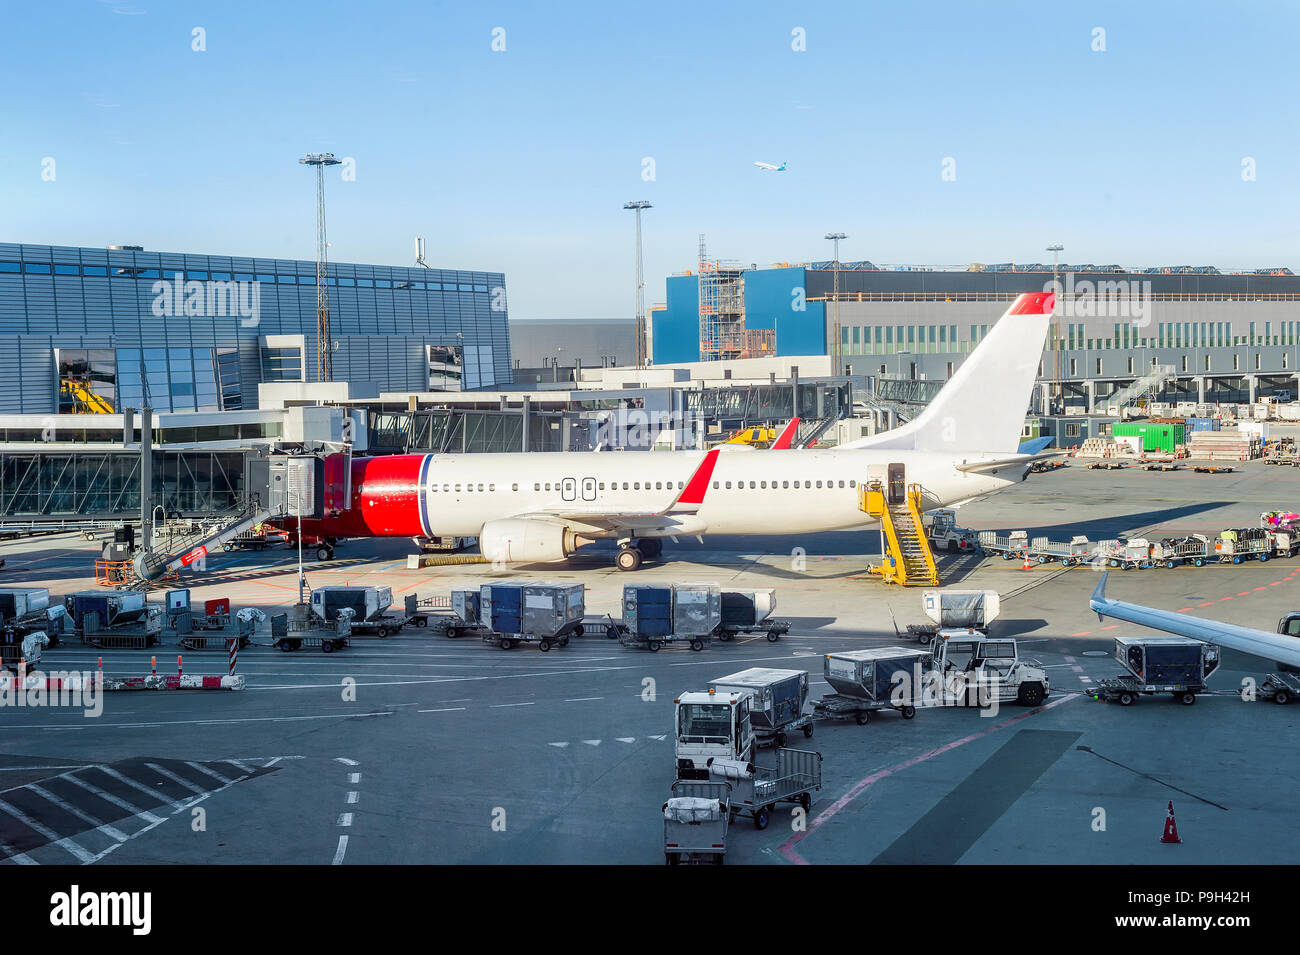 Avión de carga estacionado en el aeropuerto de Copenhague edificio, escaleras y portaequipajes cerca Foto de stock